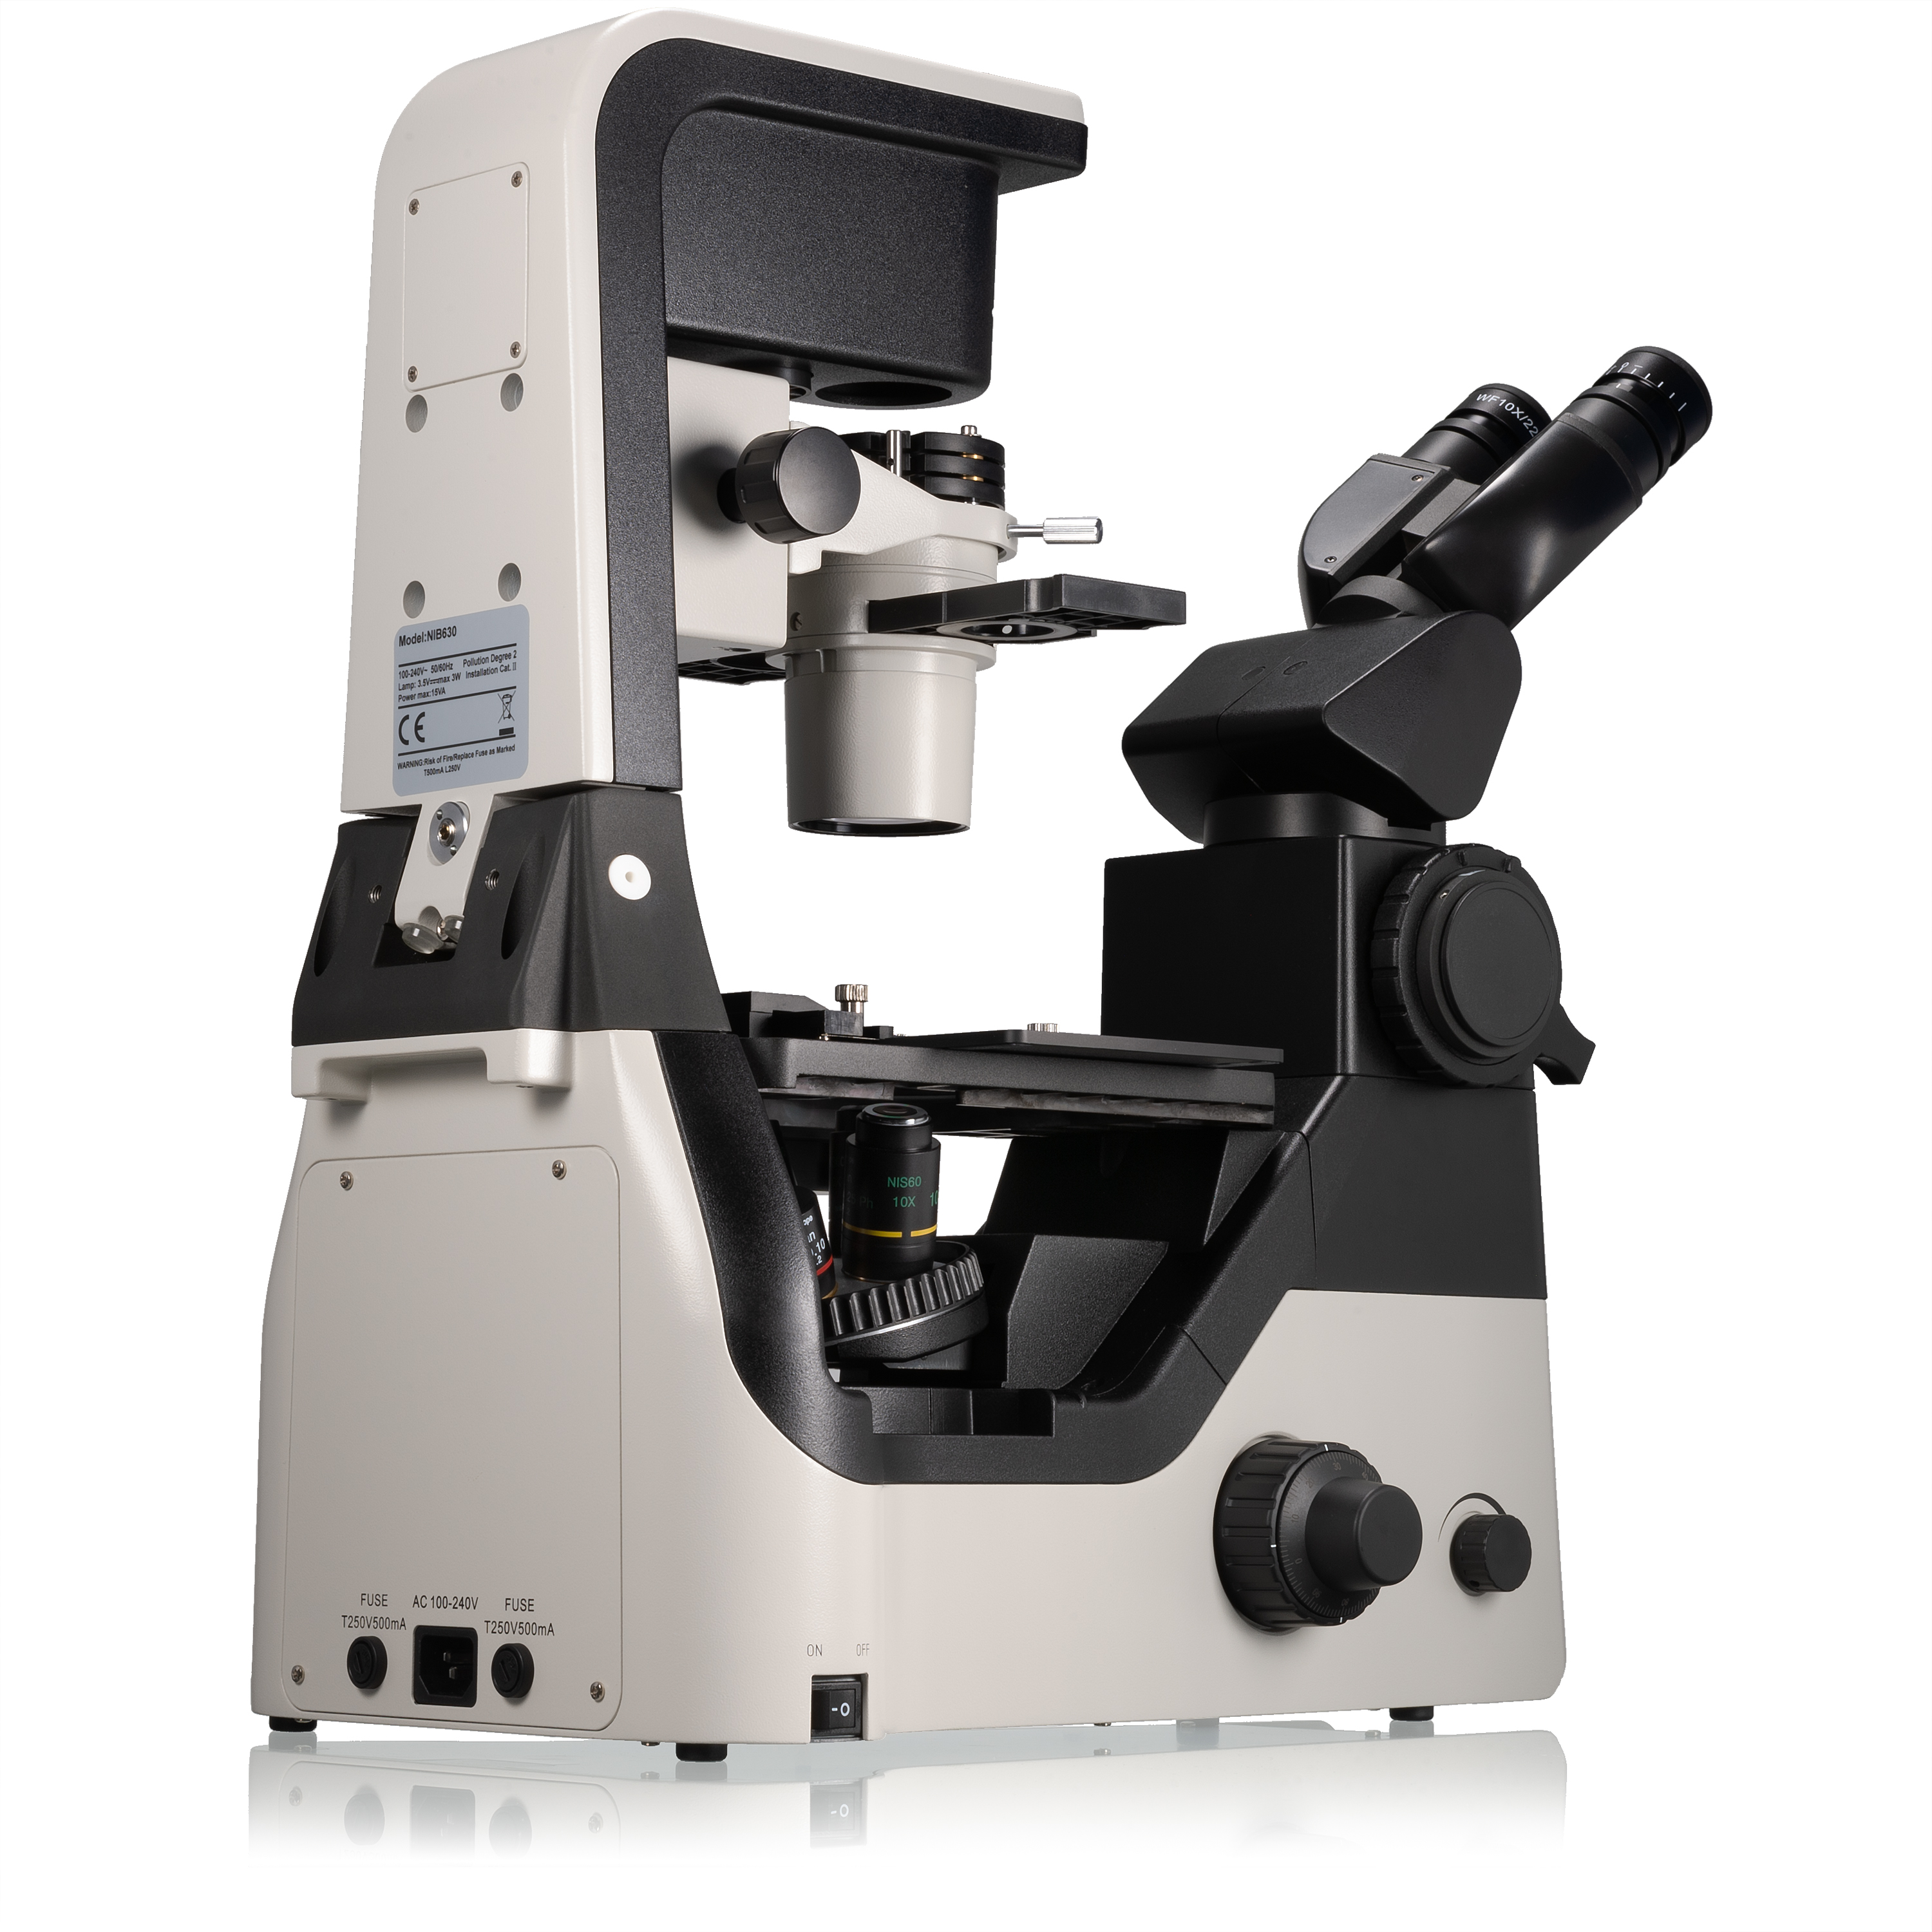 Nexcope NIB630 microscopio inverso di ricerca con unità di illuminazione inclinabile